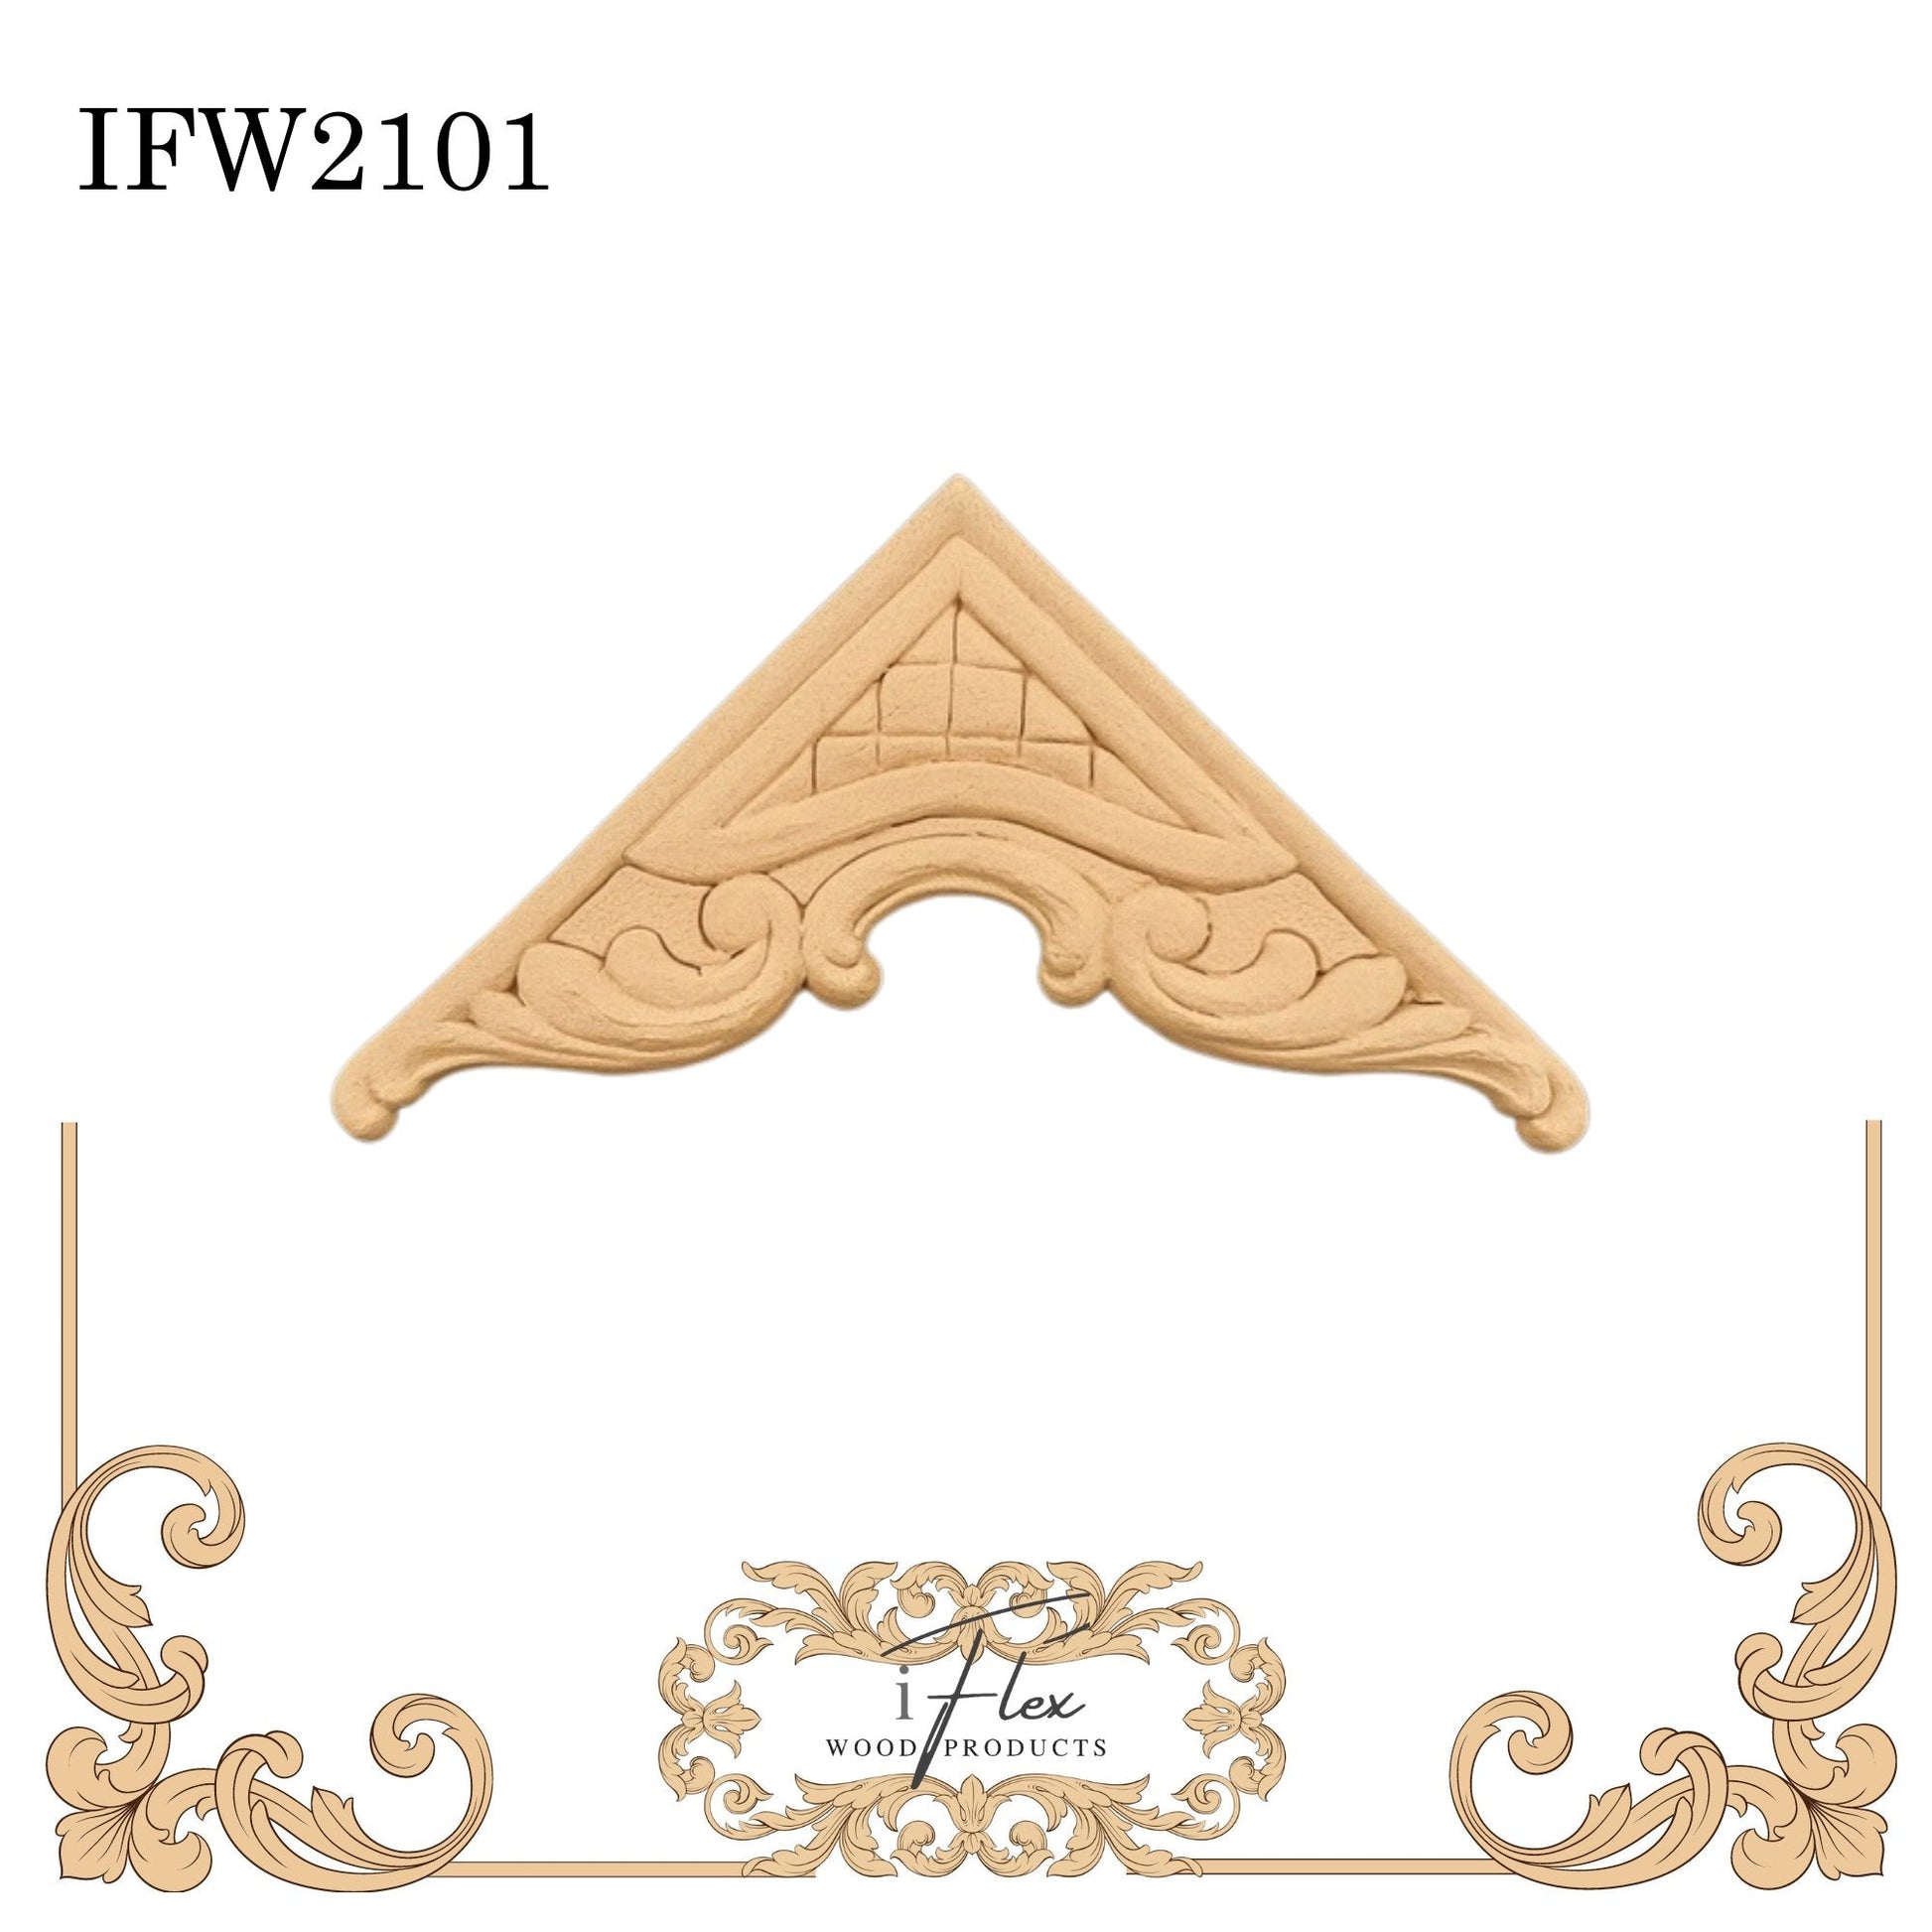 IFW 2101